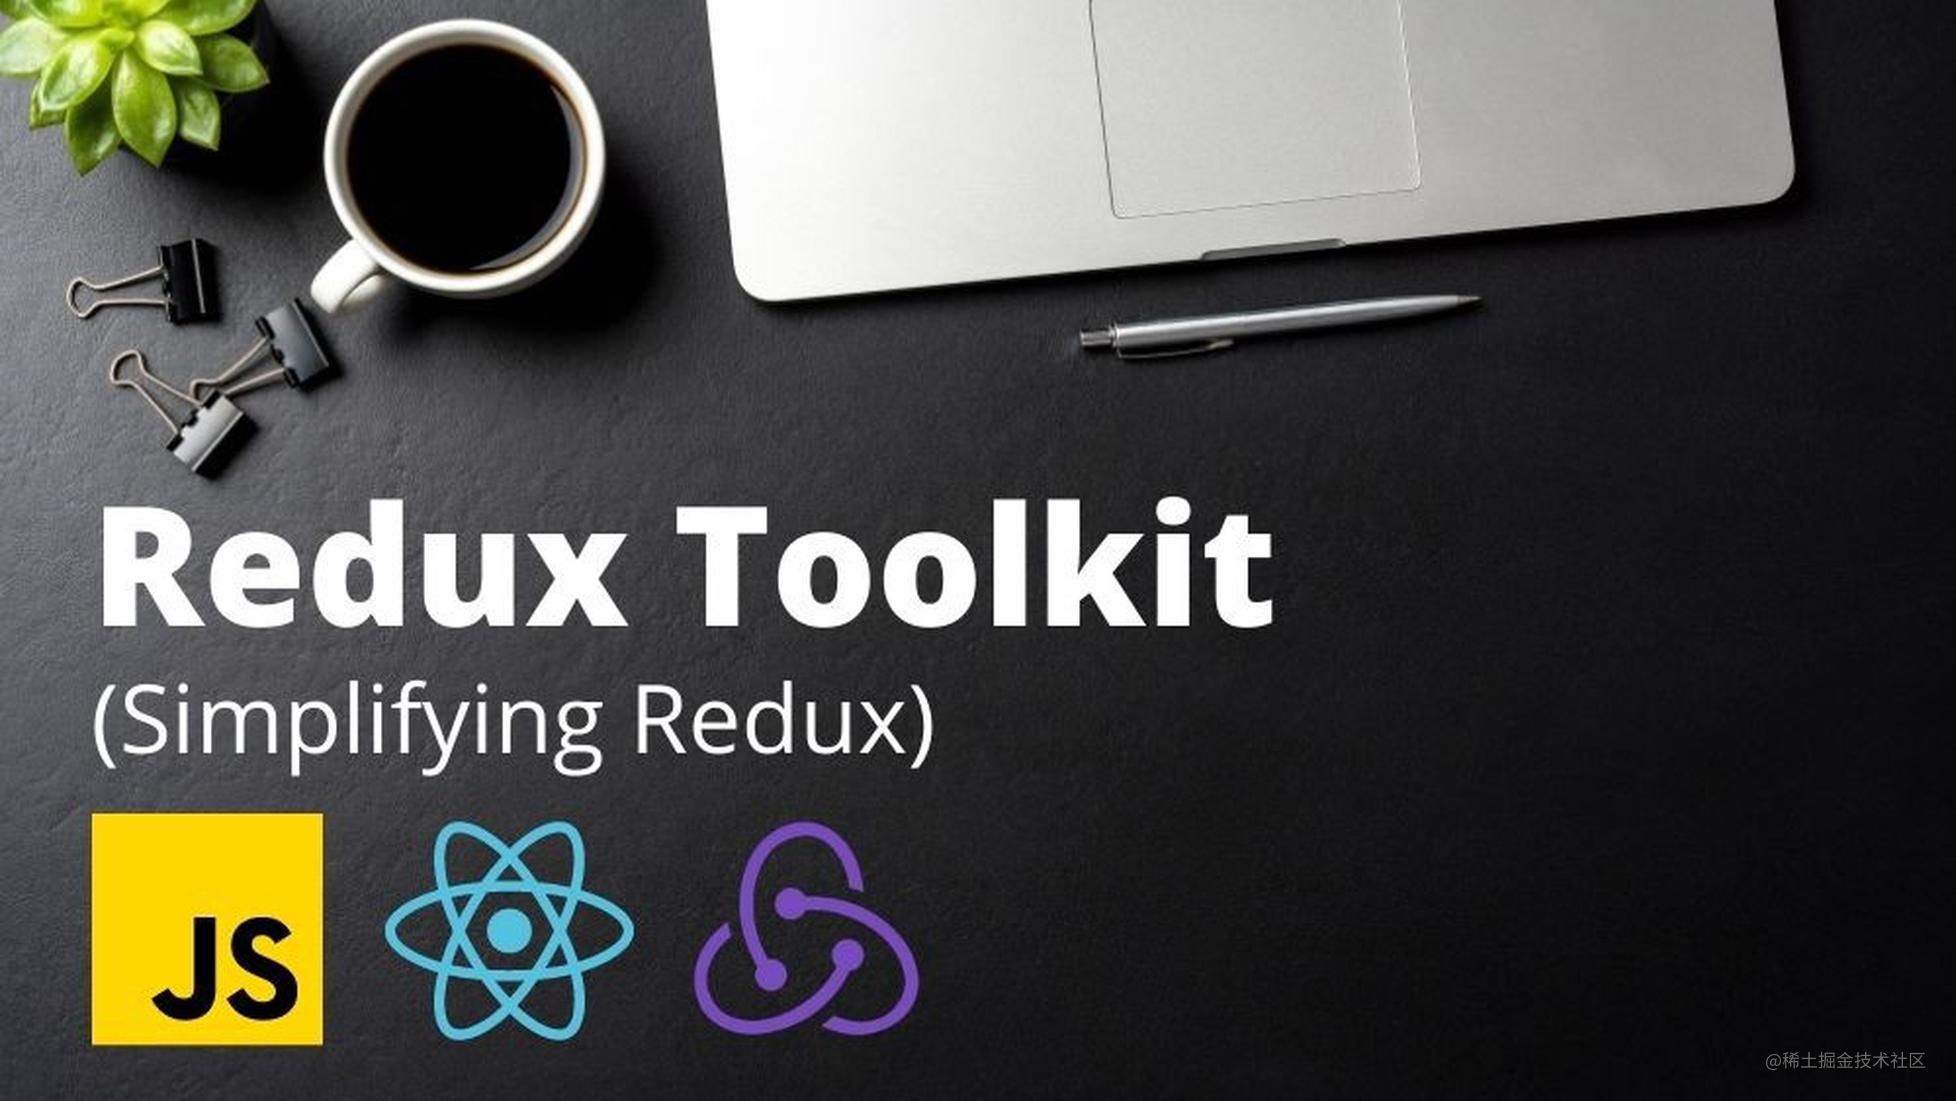 使用Redux Toolkit简化Redux